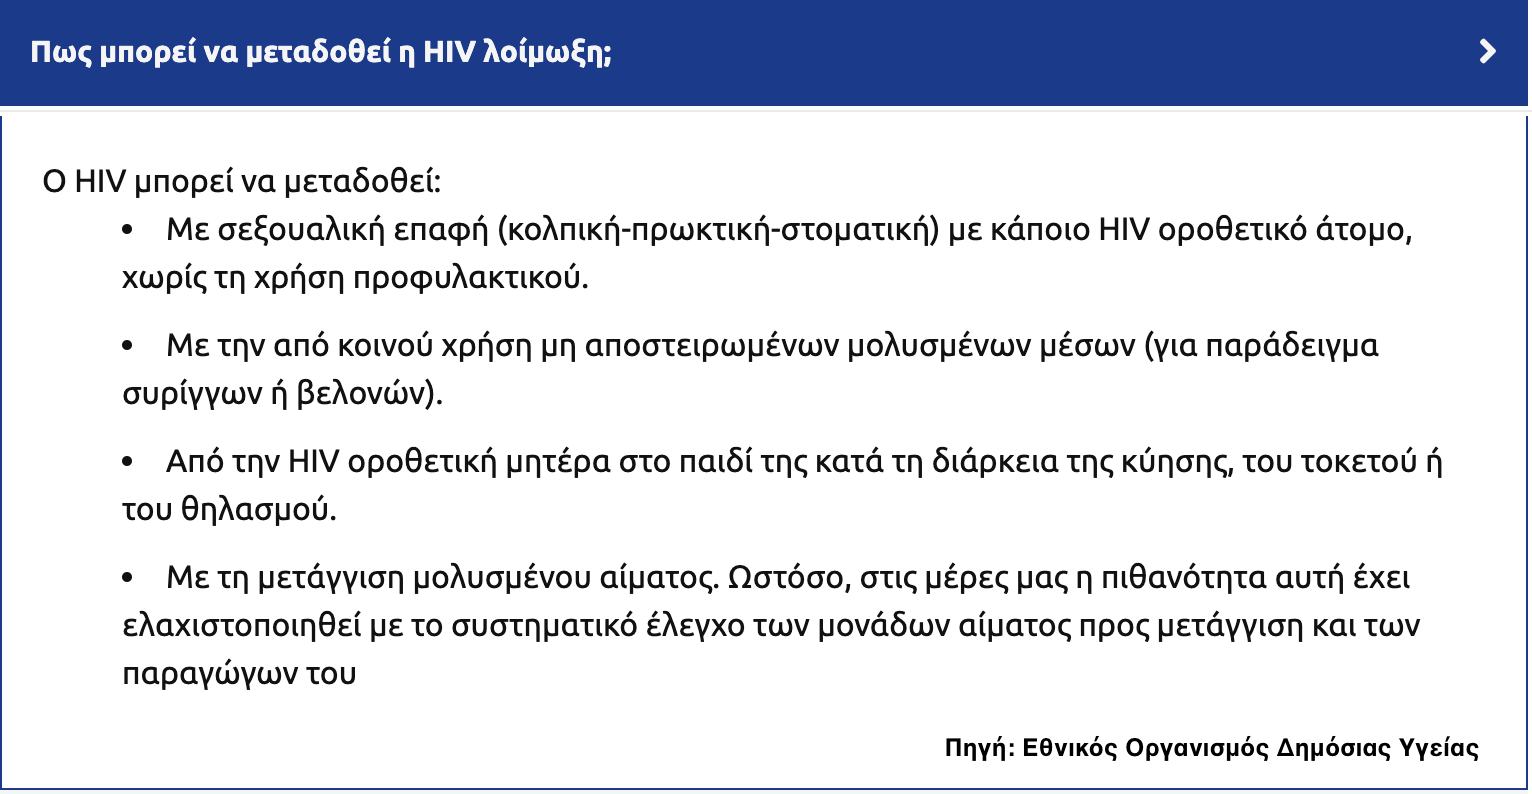 Λοιμωξη HIV - Συνέδριο AIDS